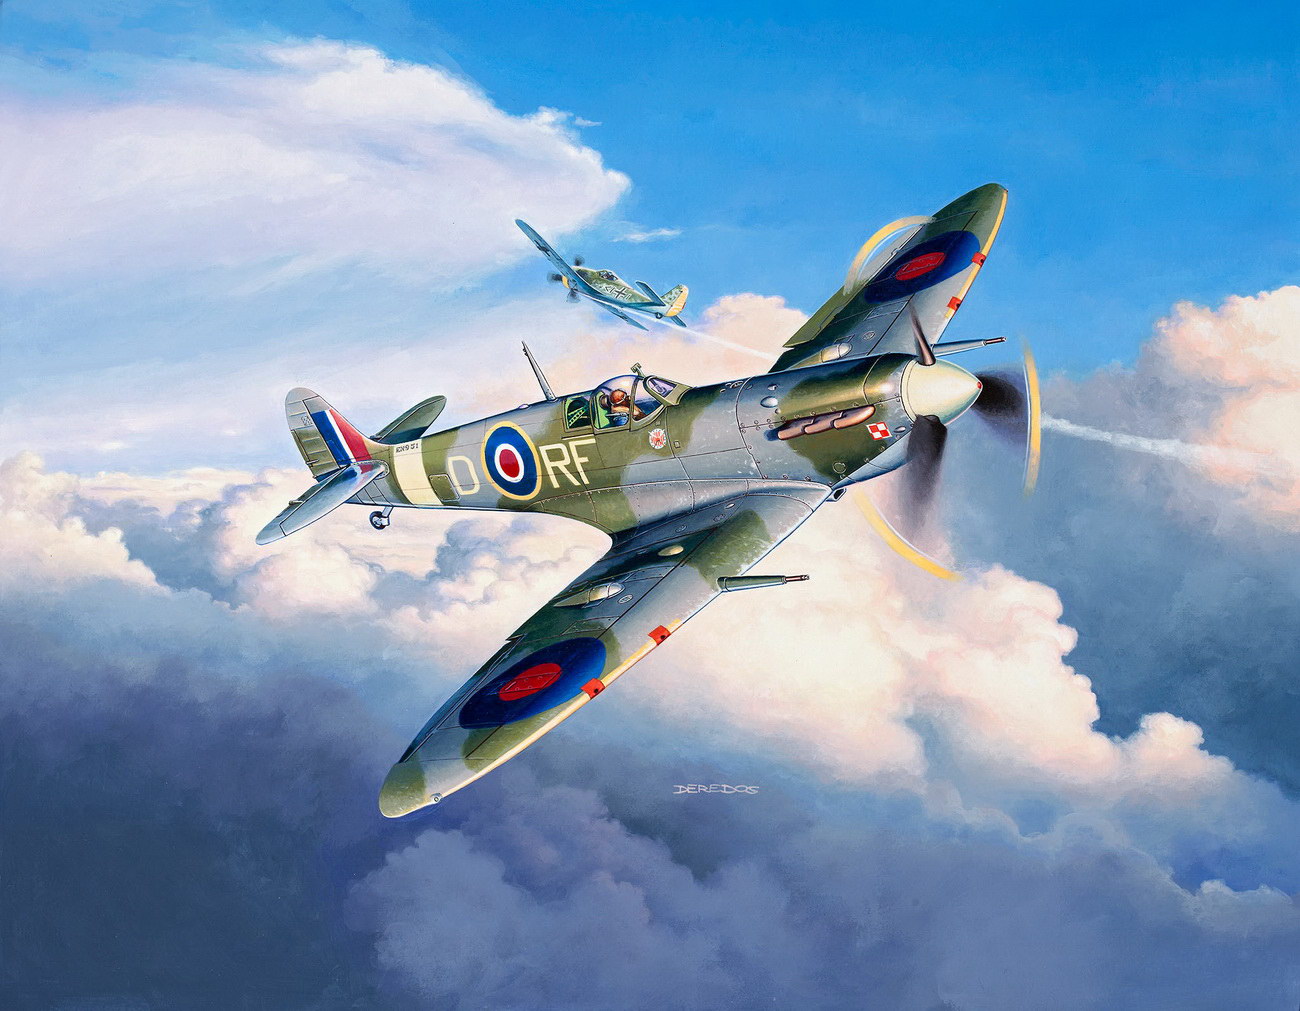 Revell 03897 - Supermarine Spitfire Mk.Vb